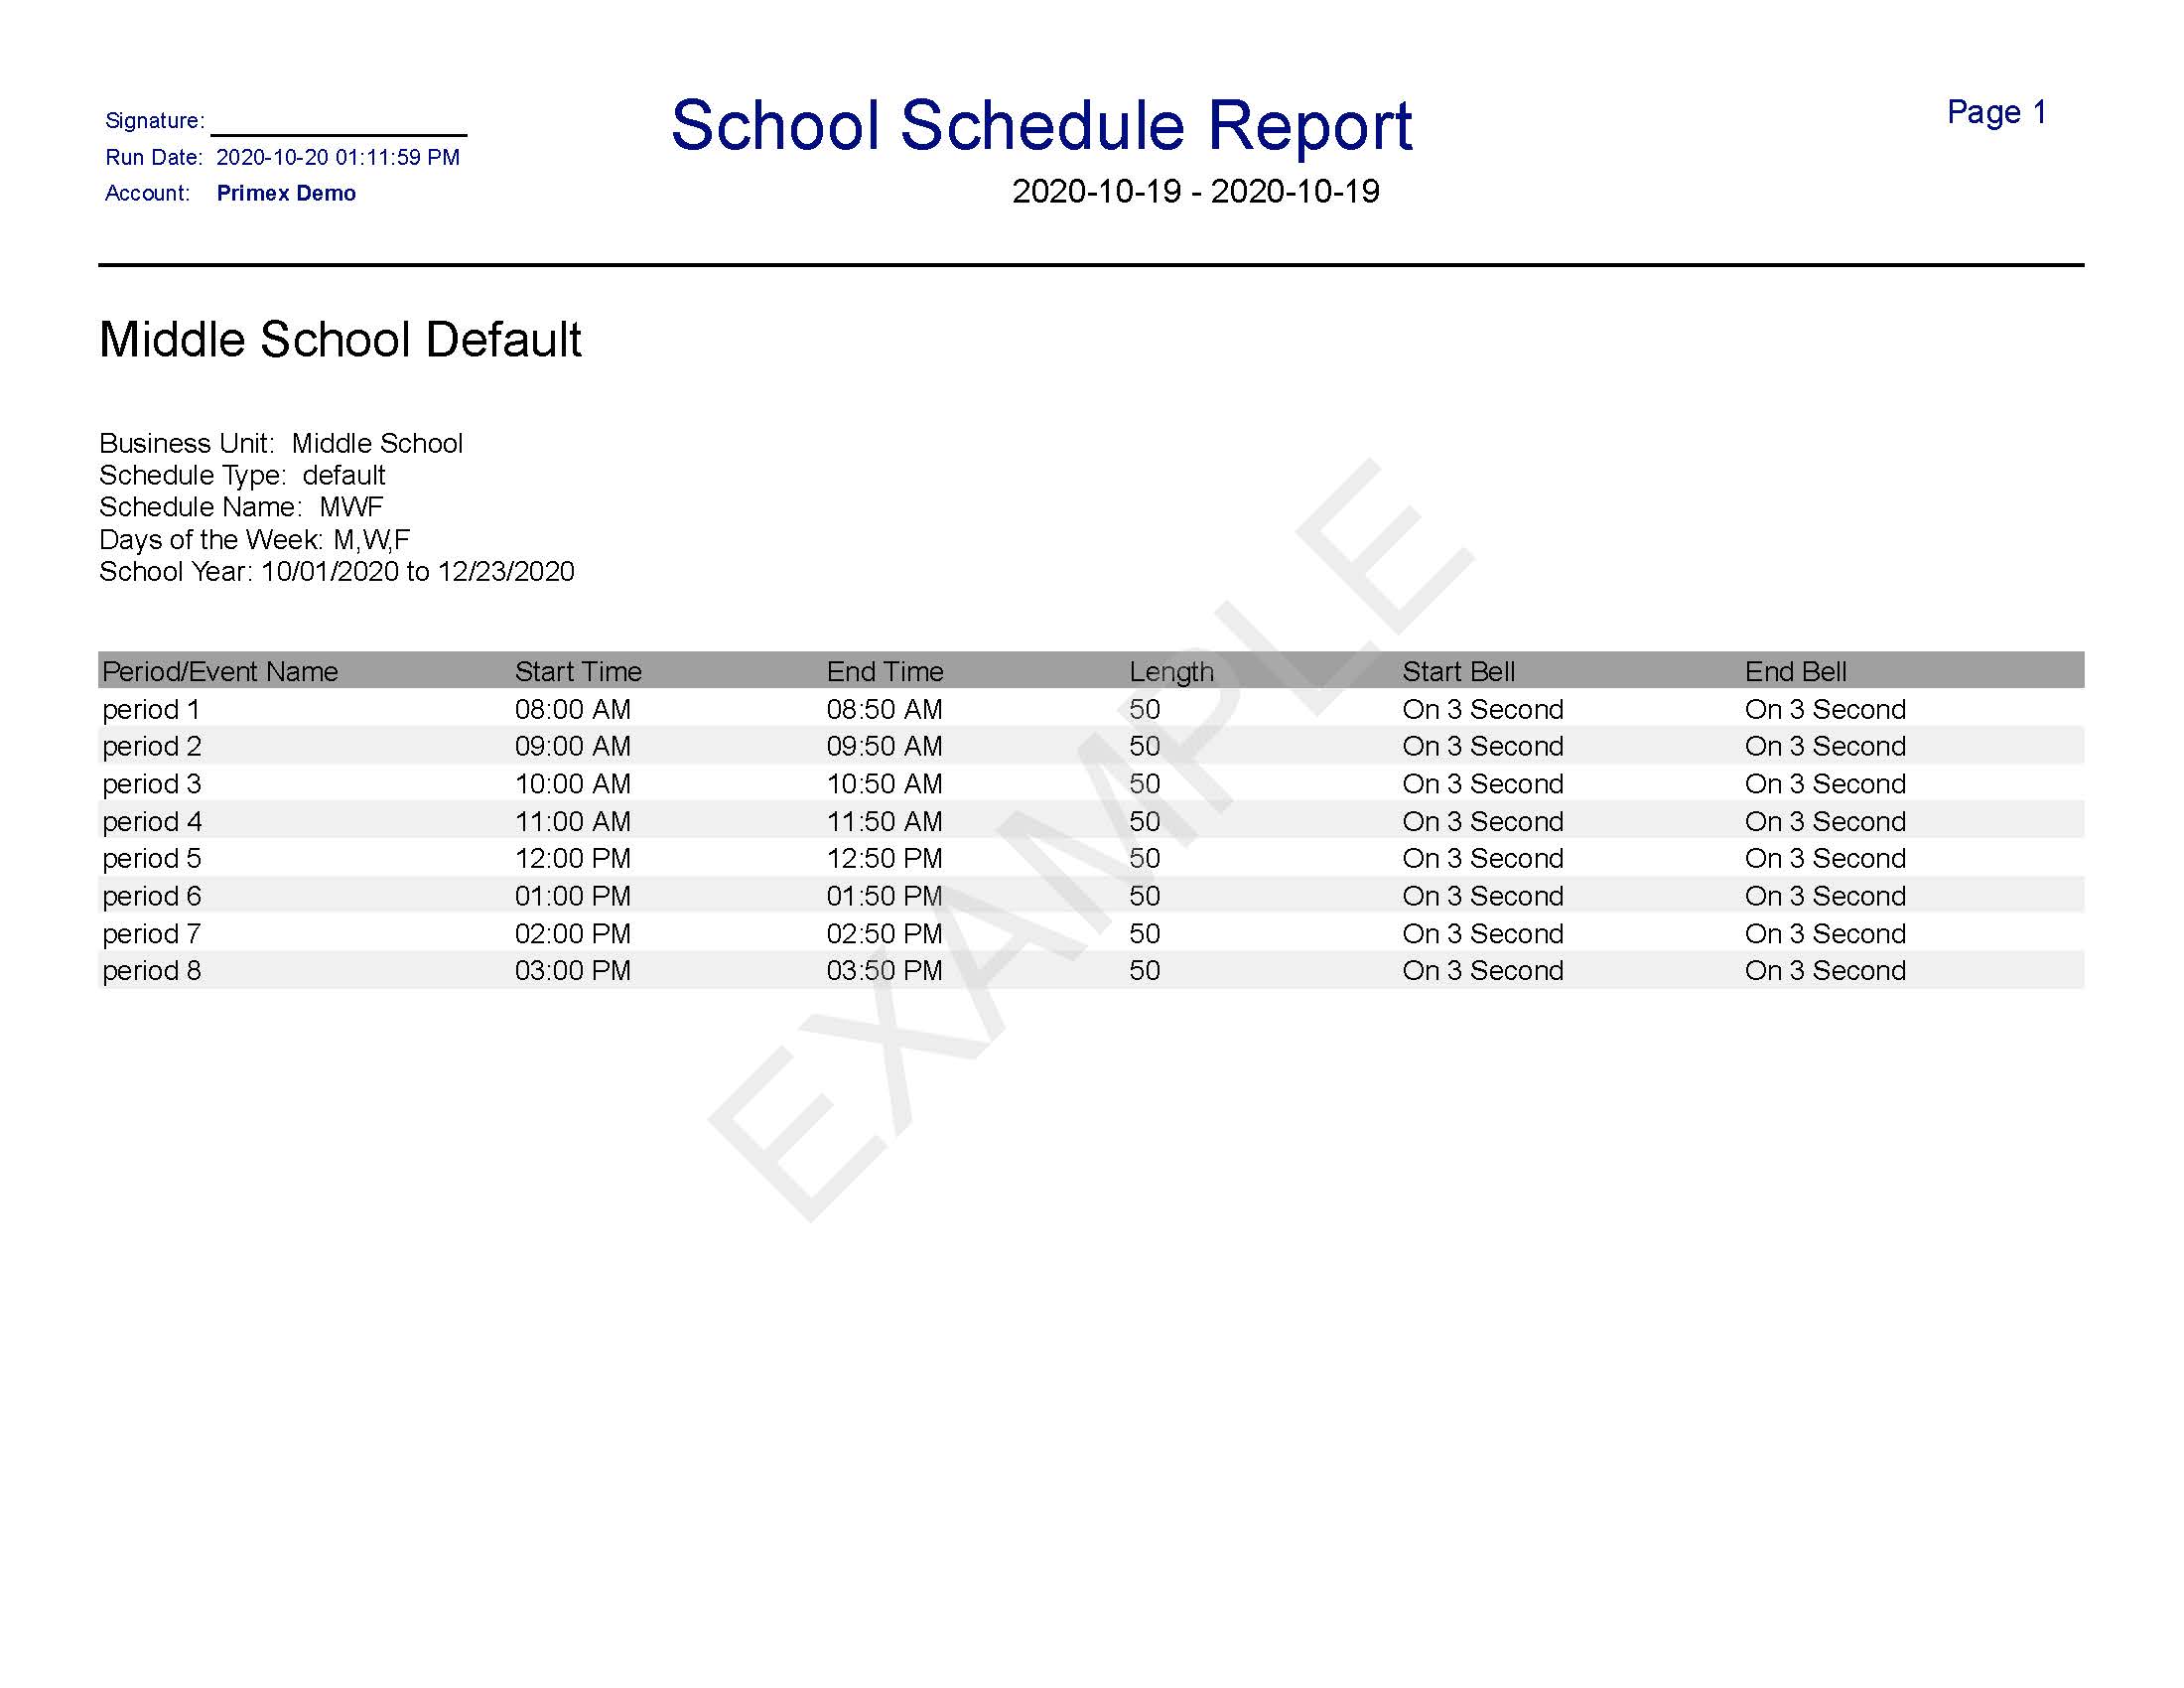 reports-school-schedule.png